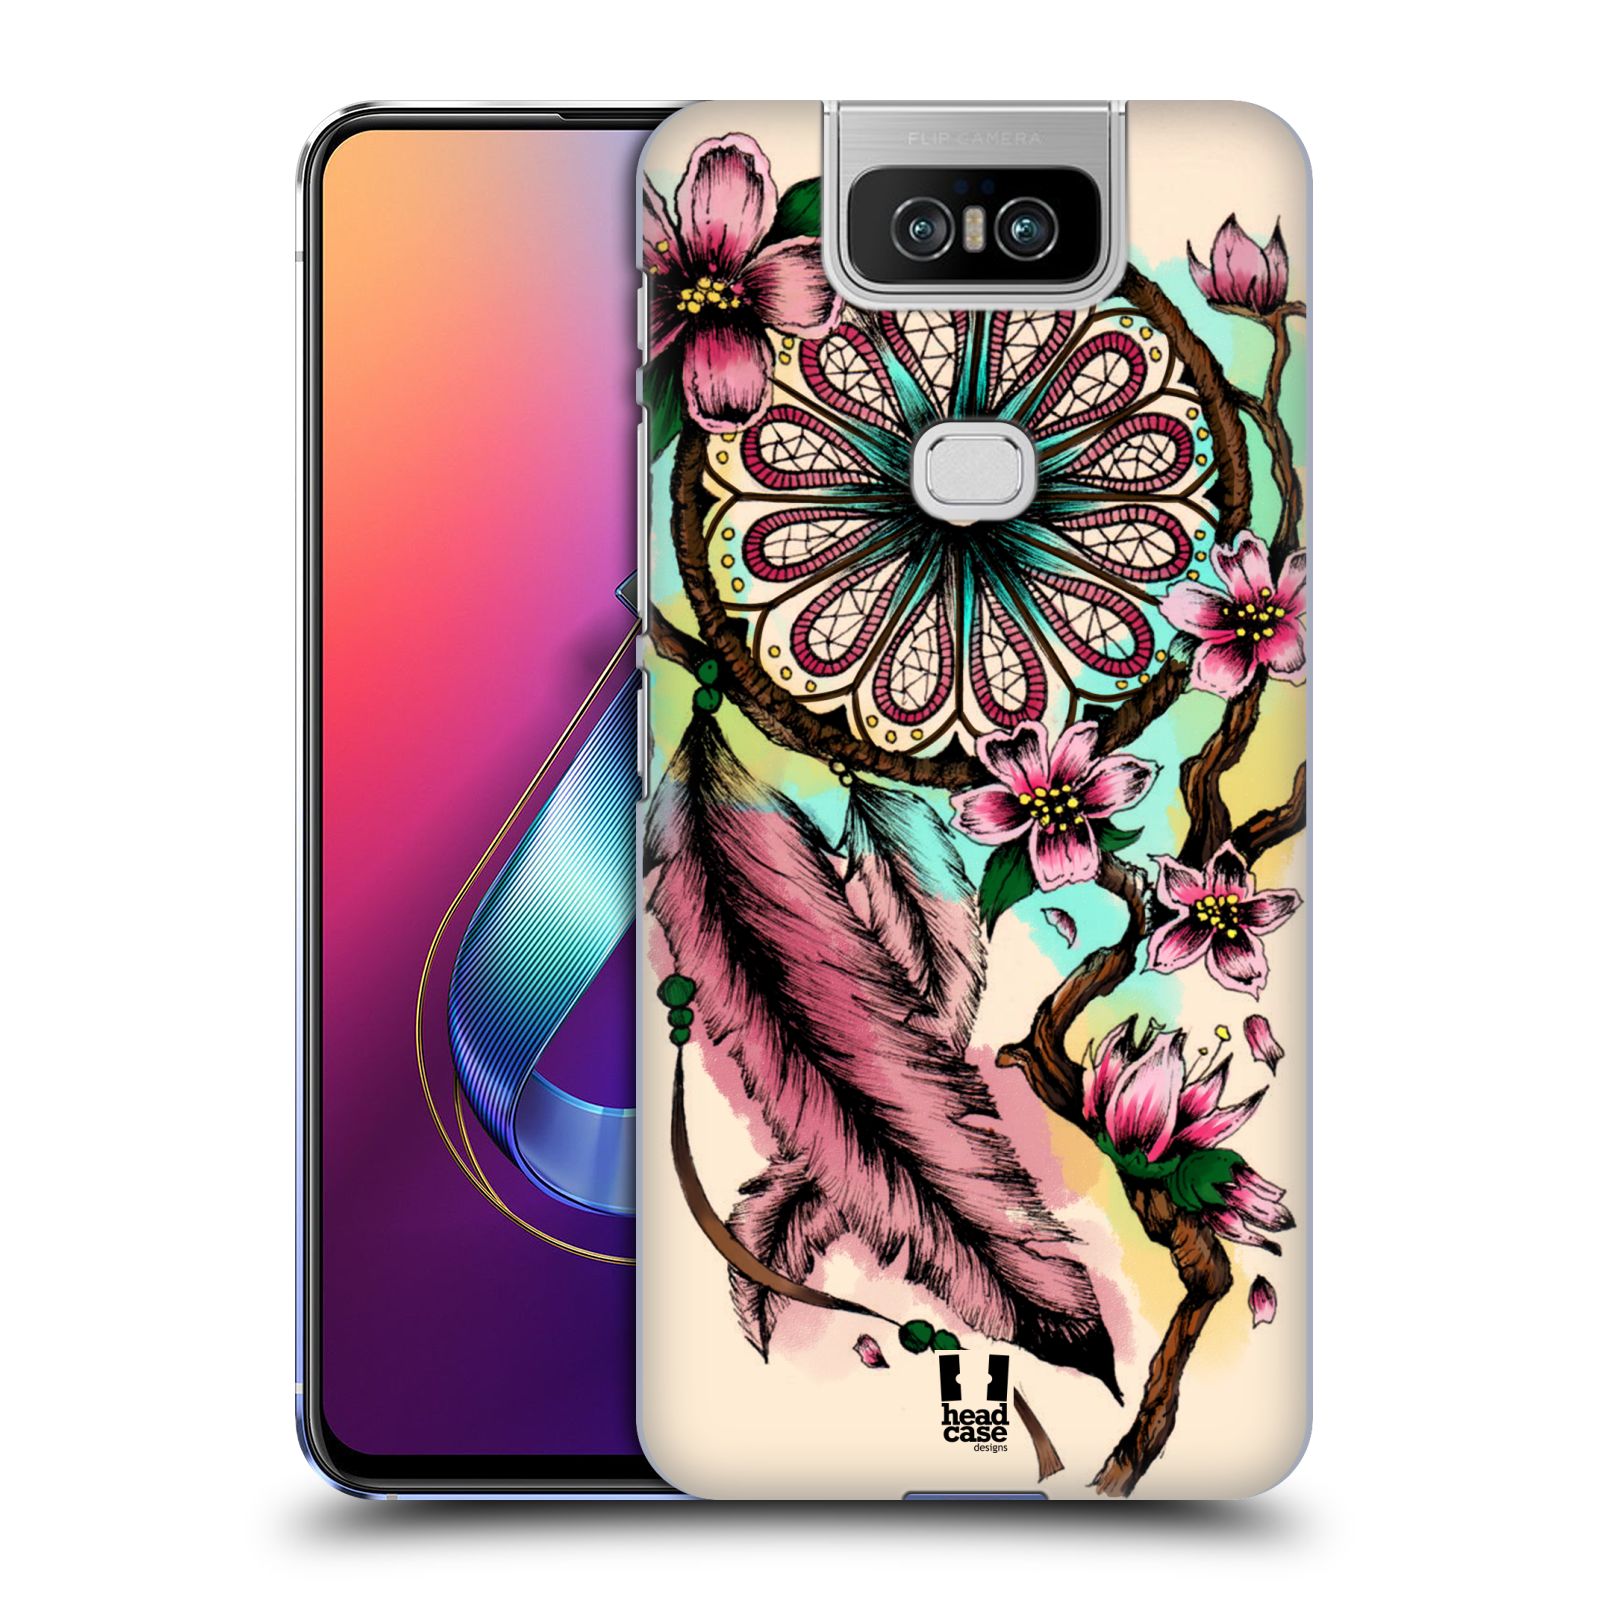 Pouzdro na mobil Asus Zenfone 6 ZS630KL - HEAD CASE - vzor Květy lapač snů růžová